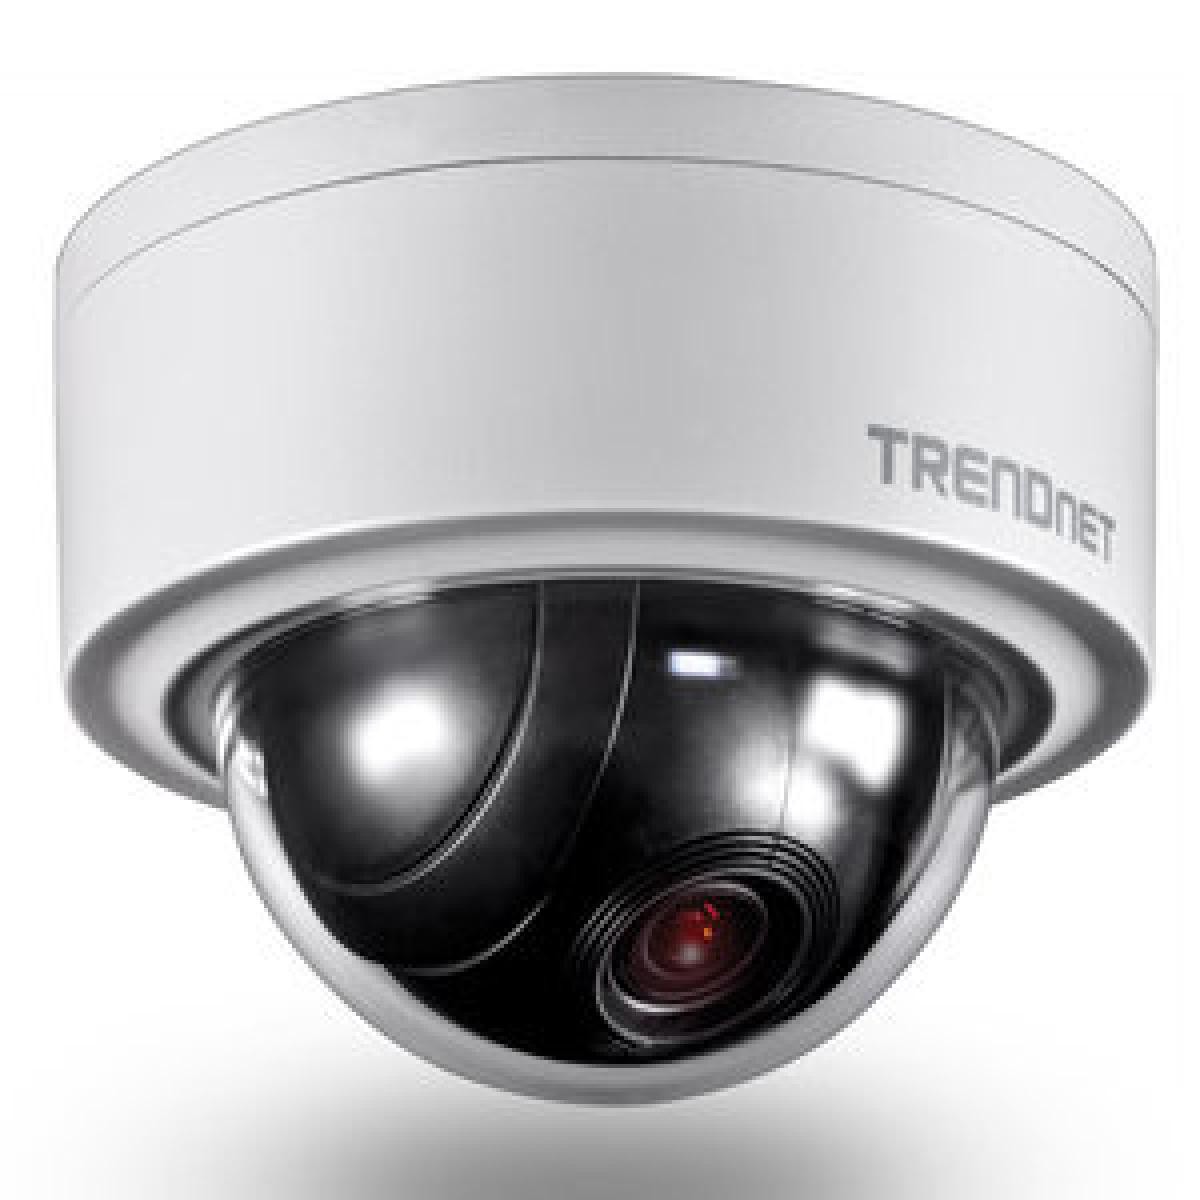 Trendnet - TRENDNET TV-IP420P - Caméra de surveillance connectée